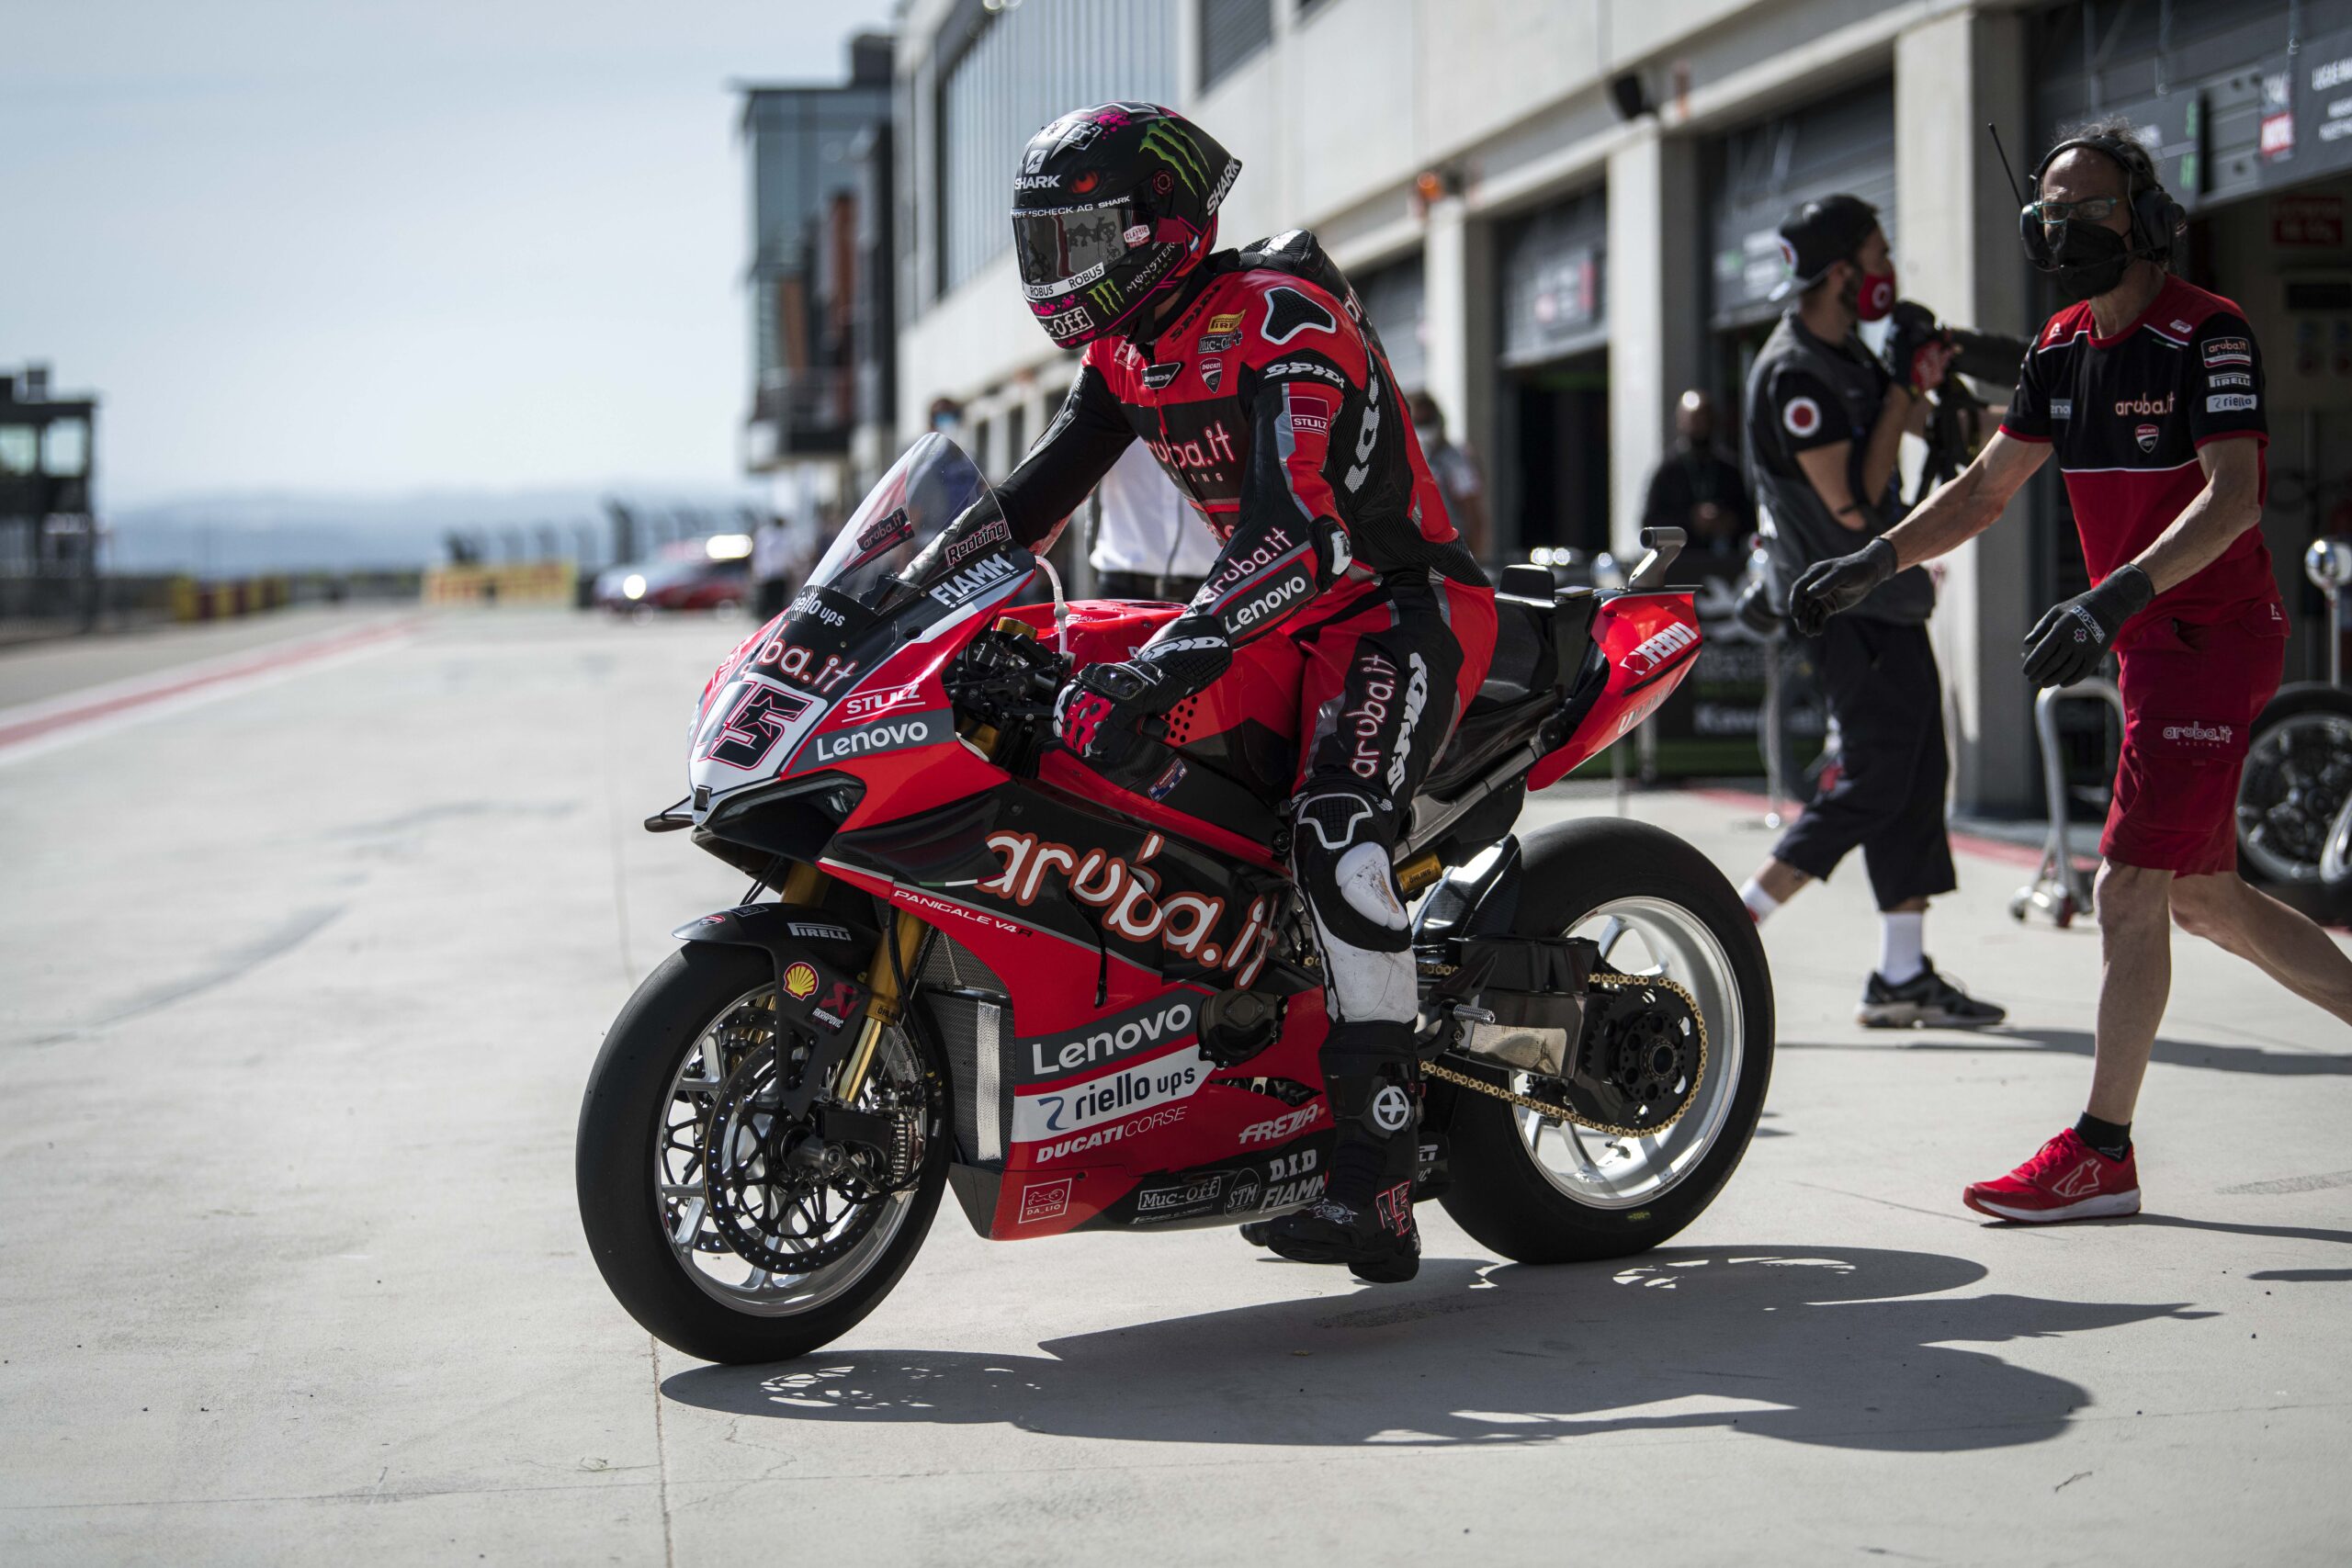 AUDES Group viste el Aruba.it Racing – Ducati Team